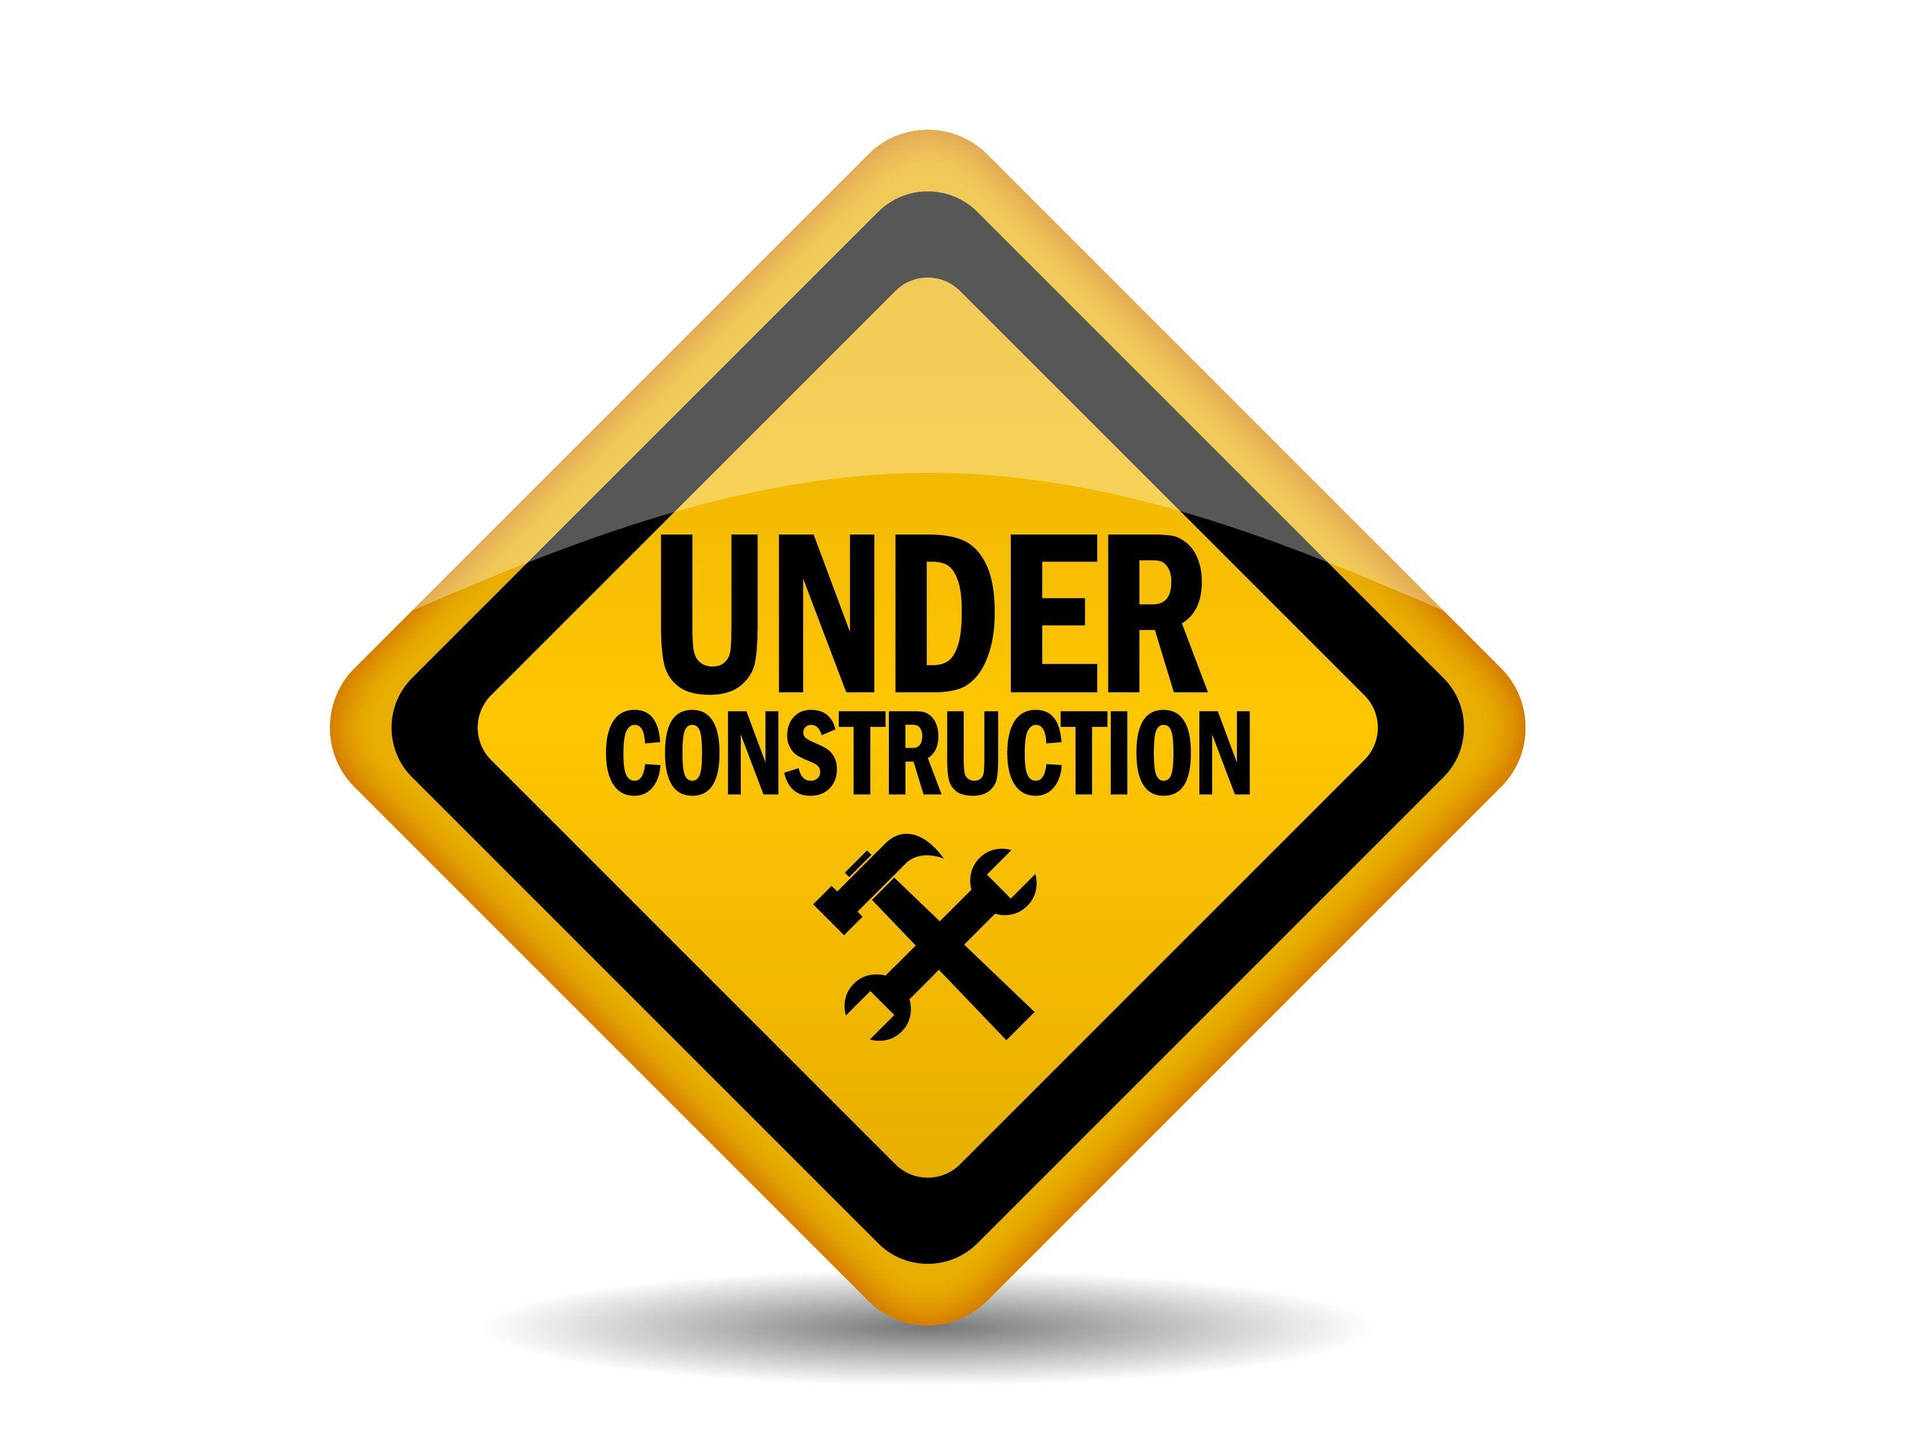 Maintenance Underway: Caution Sign at Work Site Wallpaper